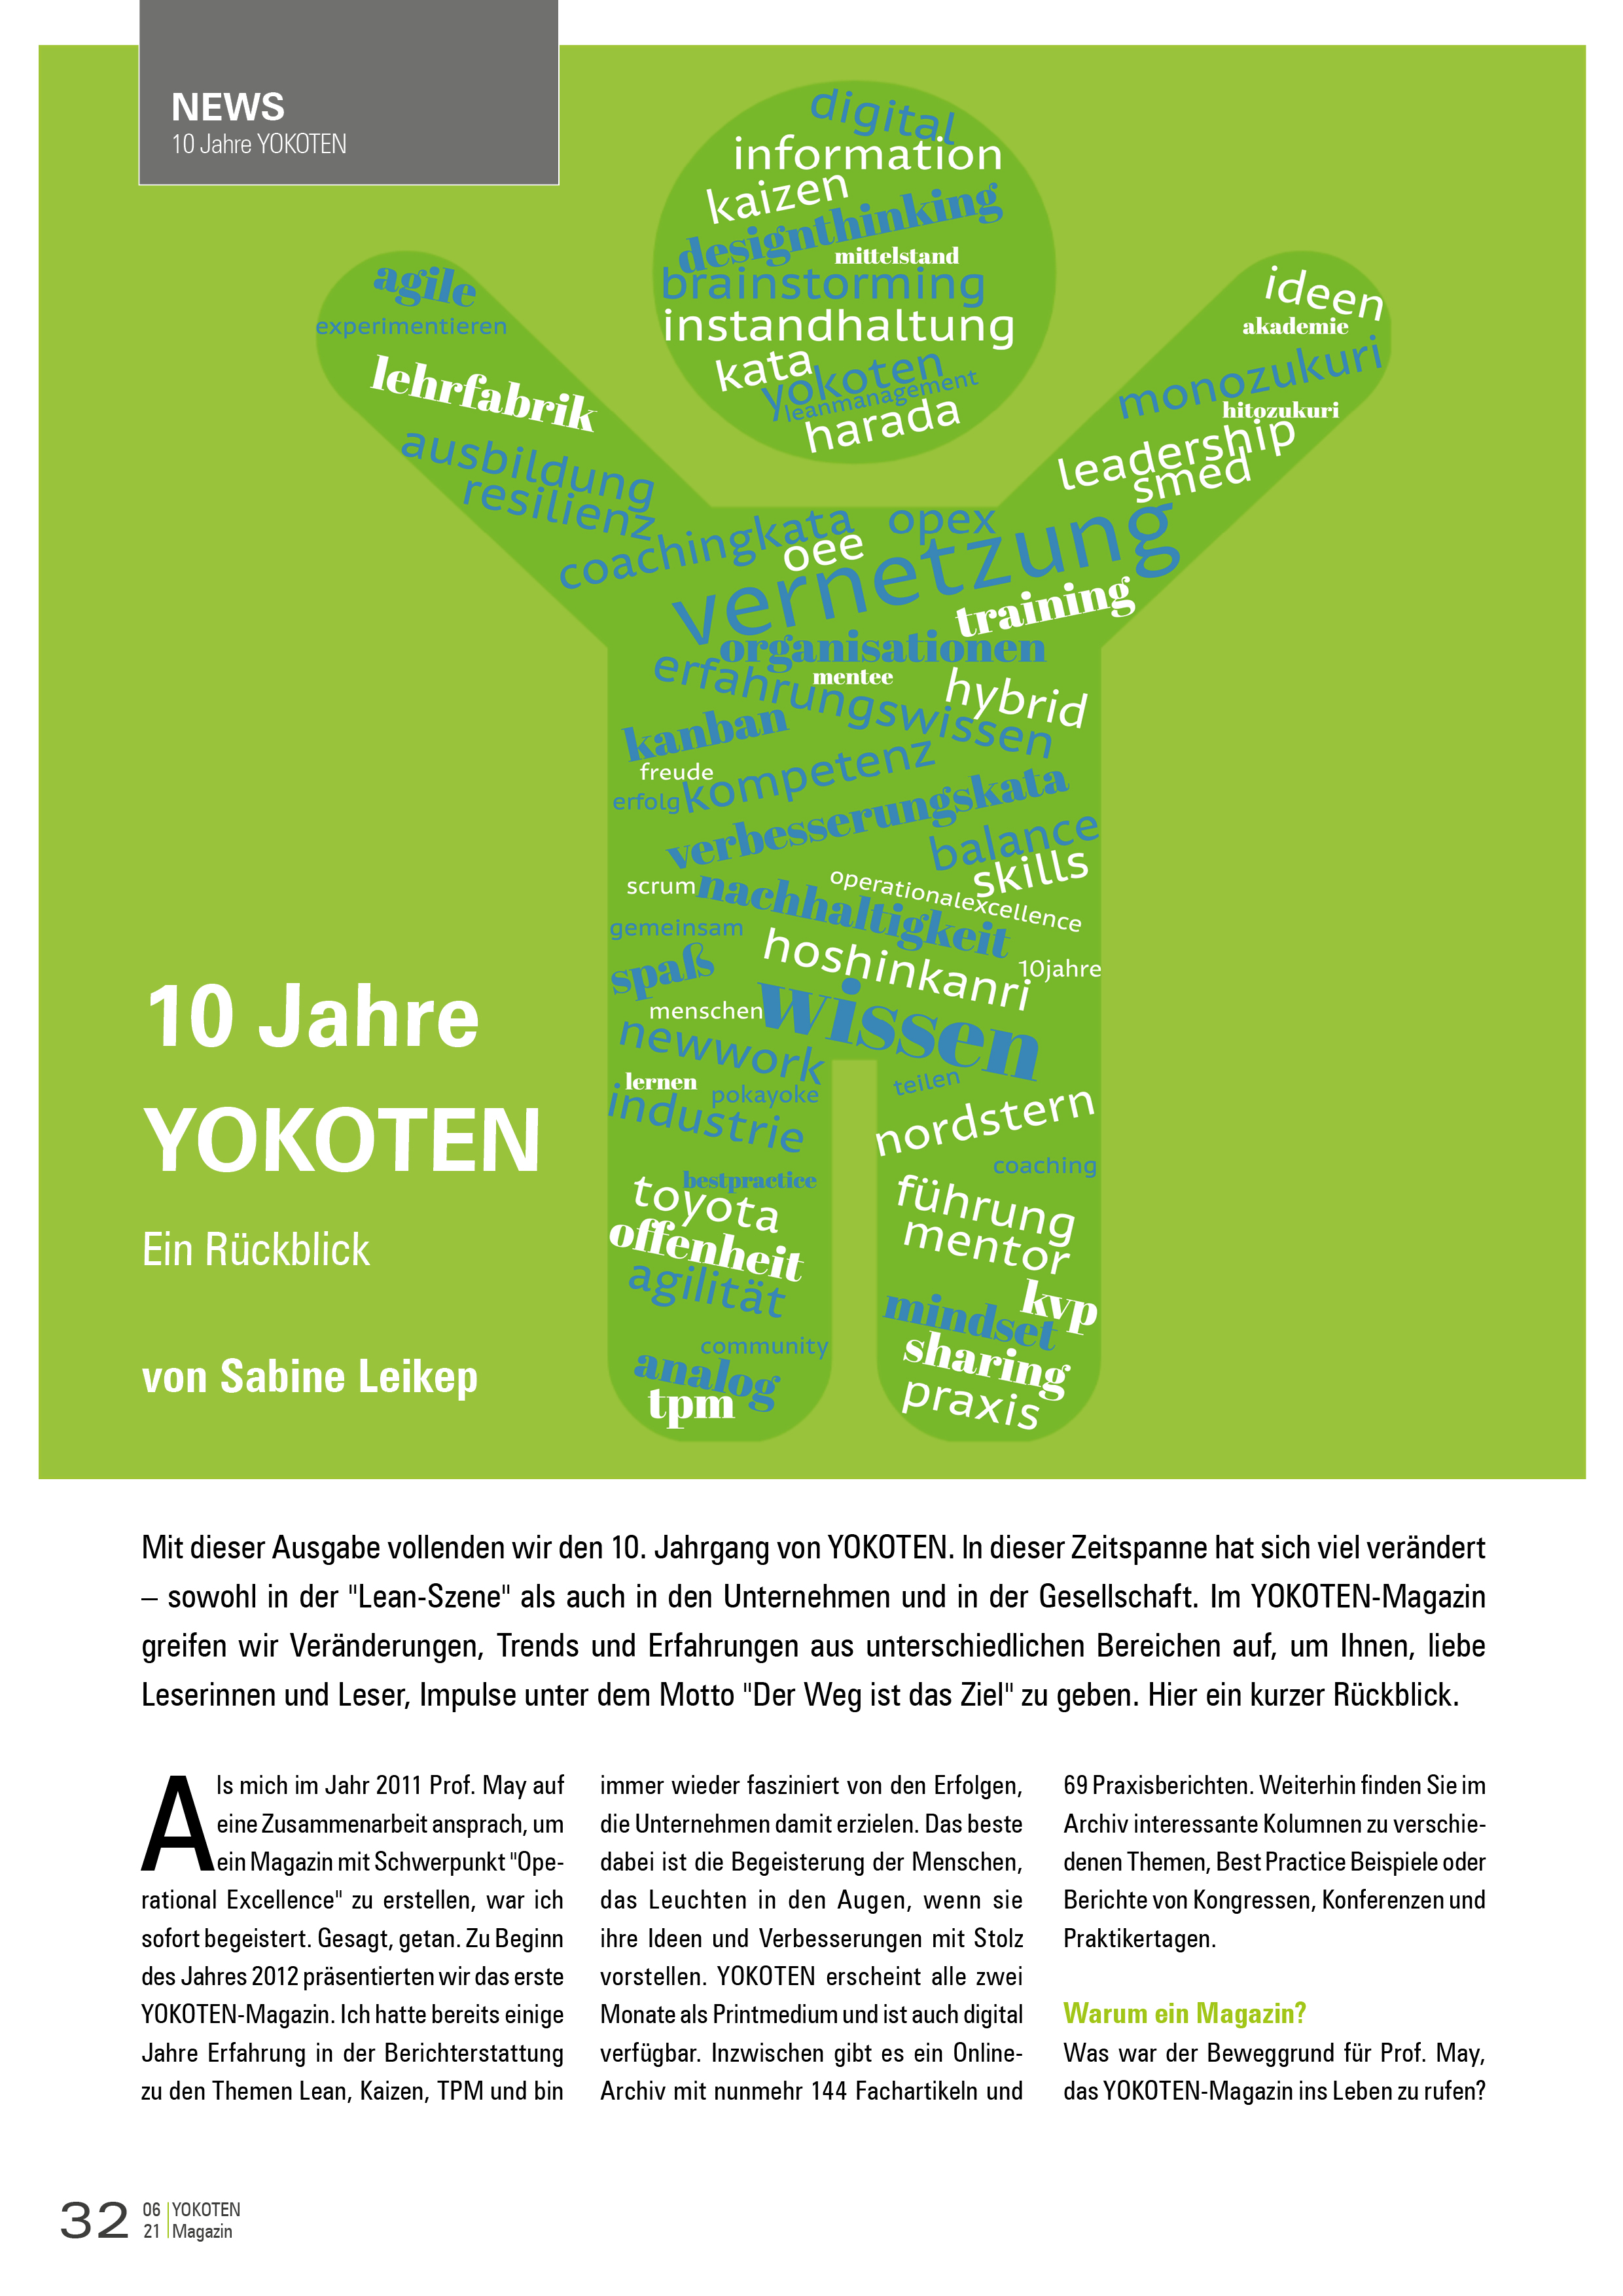 10 Jahre YOKOTEN - Artikel aus Fachmagazin YOKOTEN 2021-06